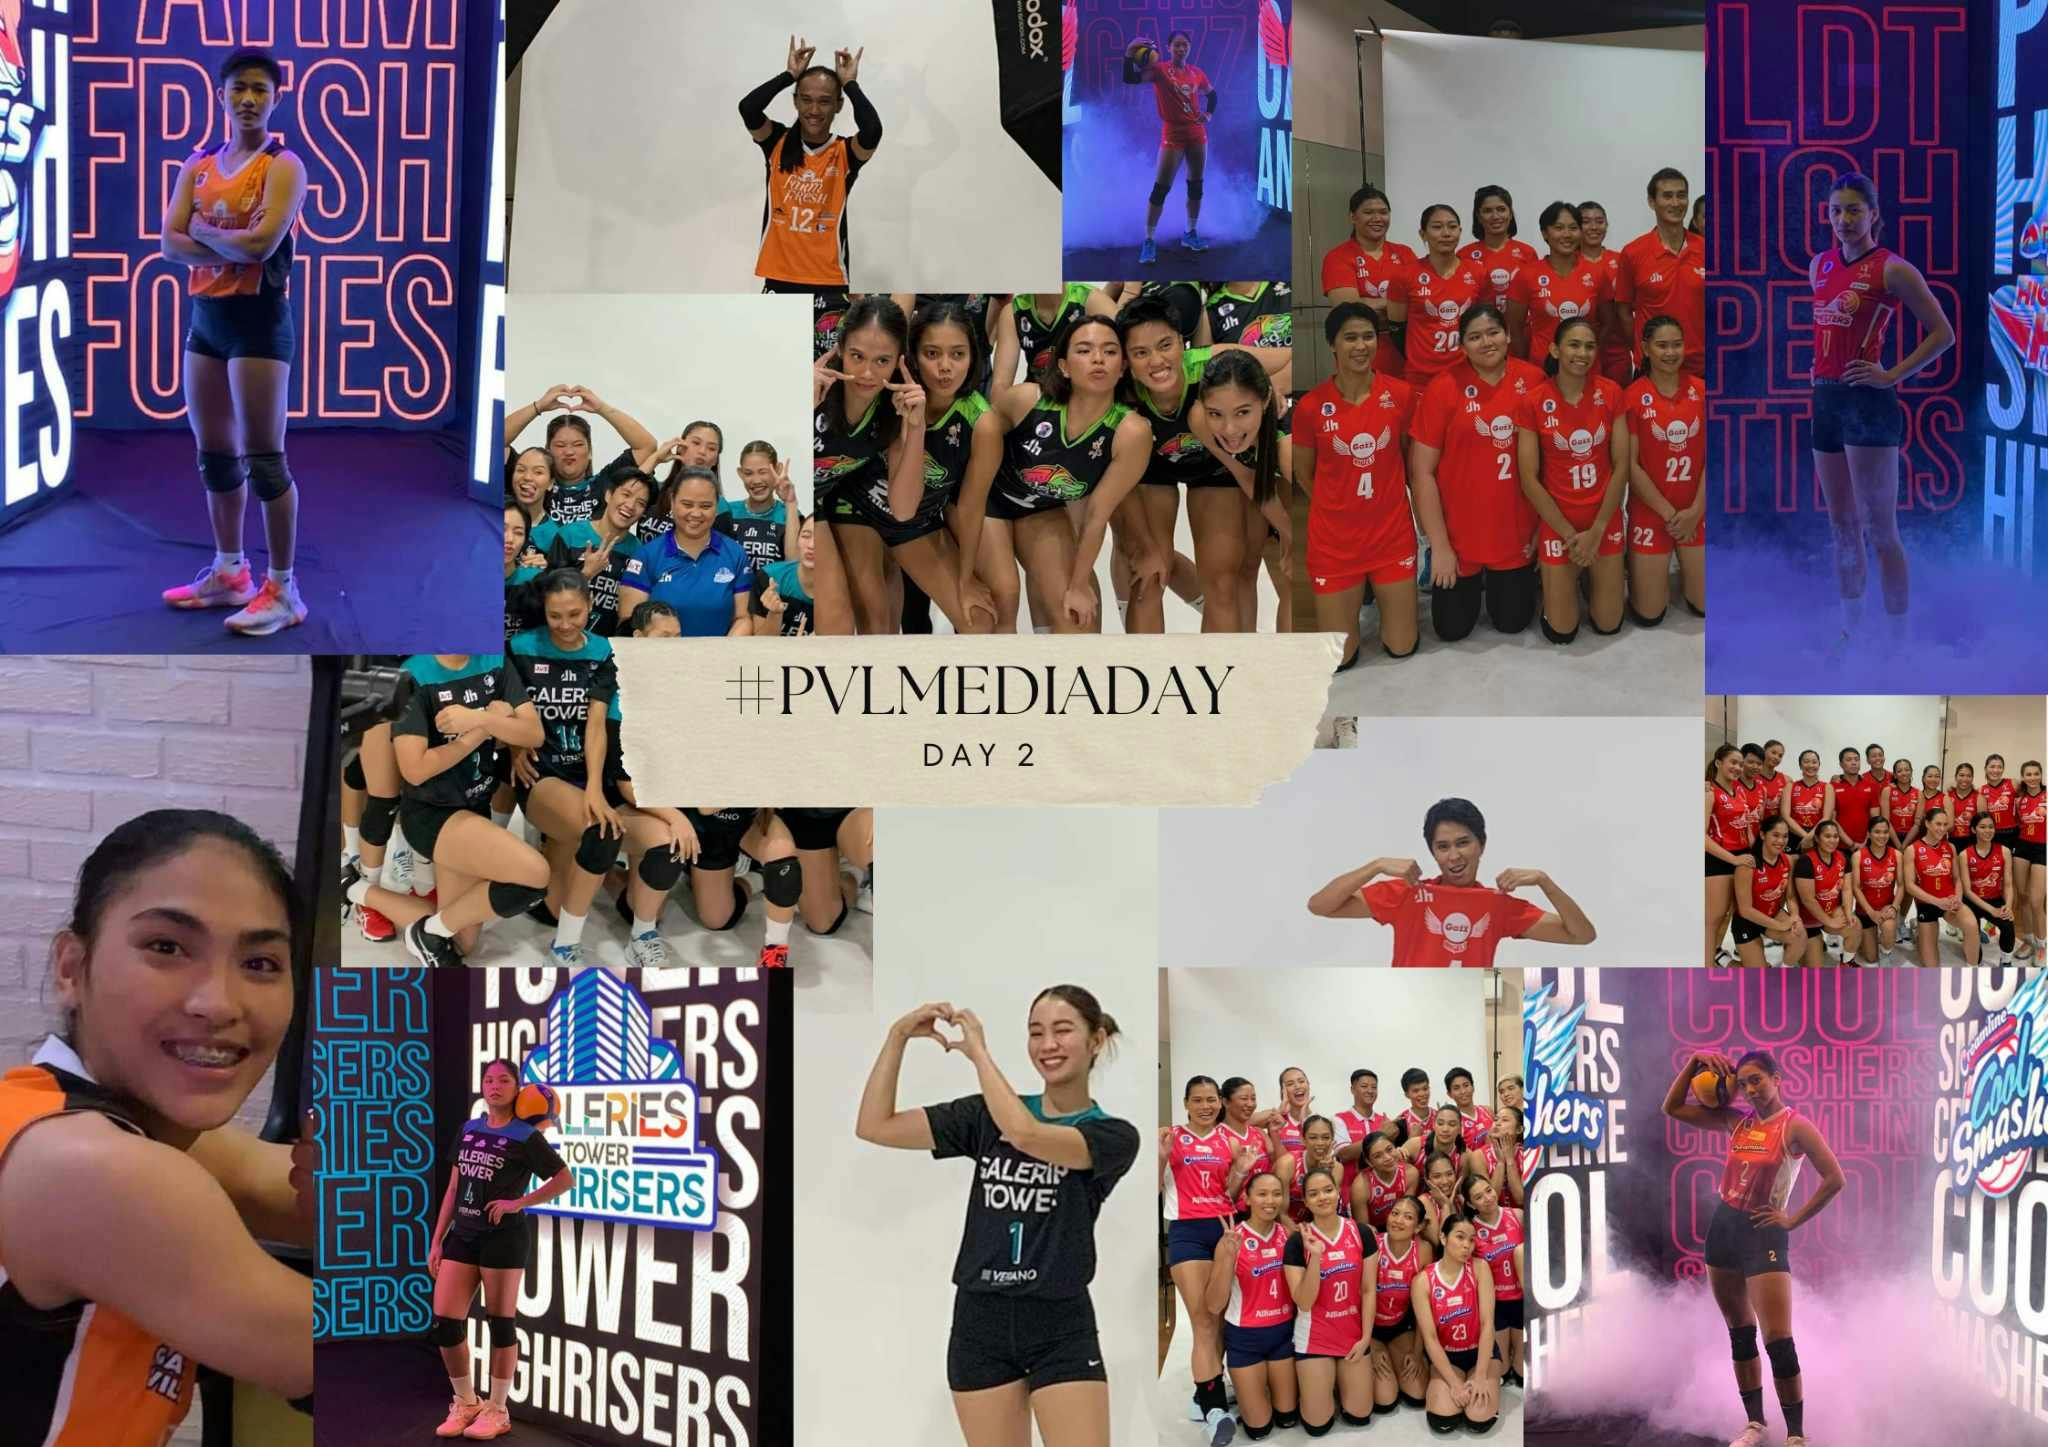 PVL: #PVLMediaDay Day 2 wrap up